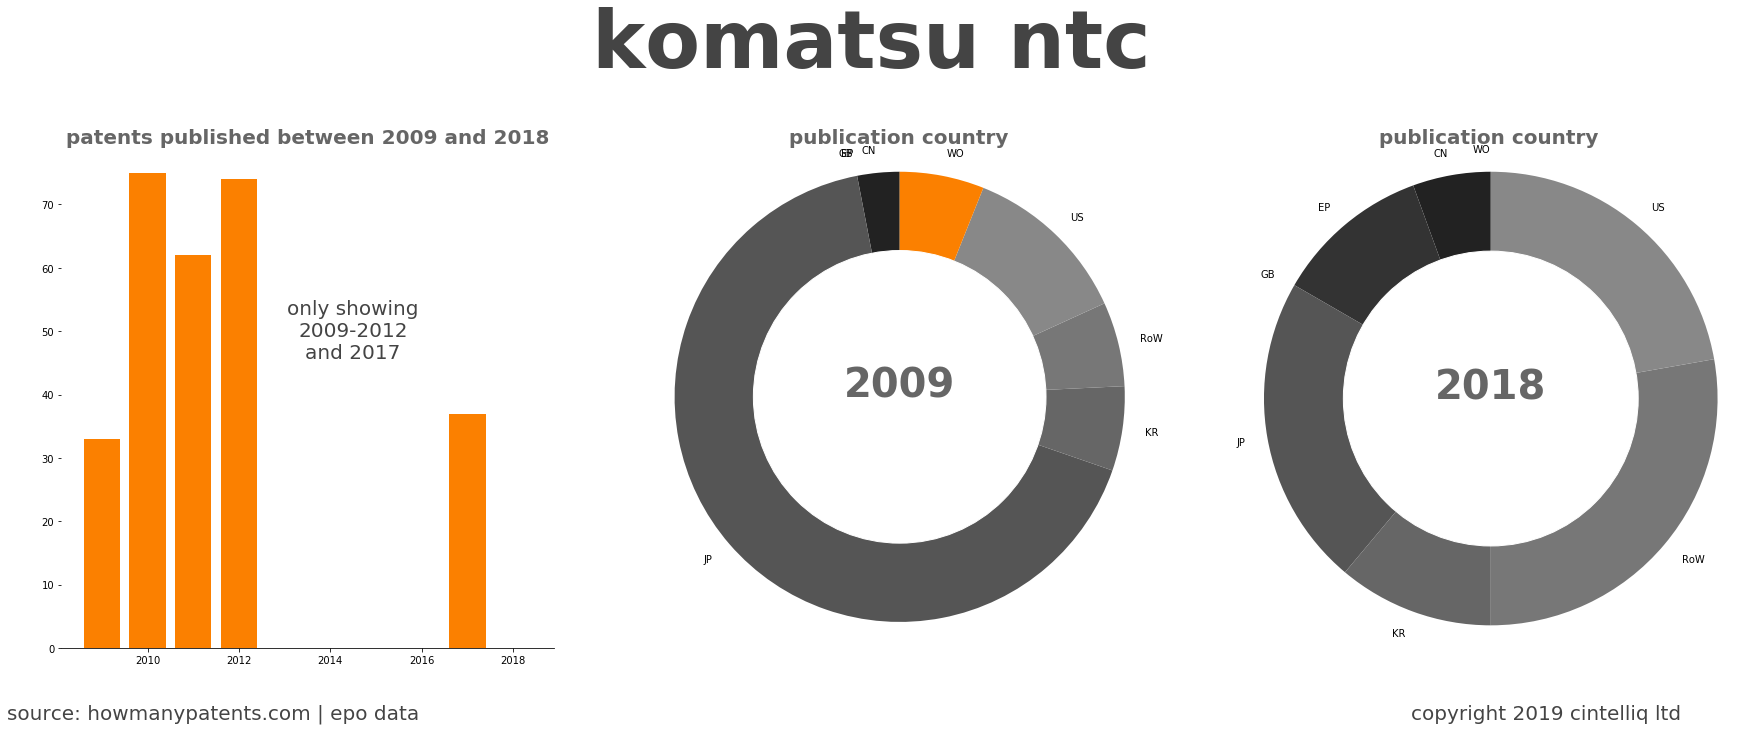 summary of patents for Komatsu Ntc